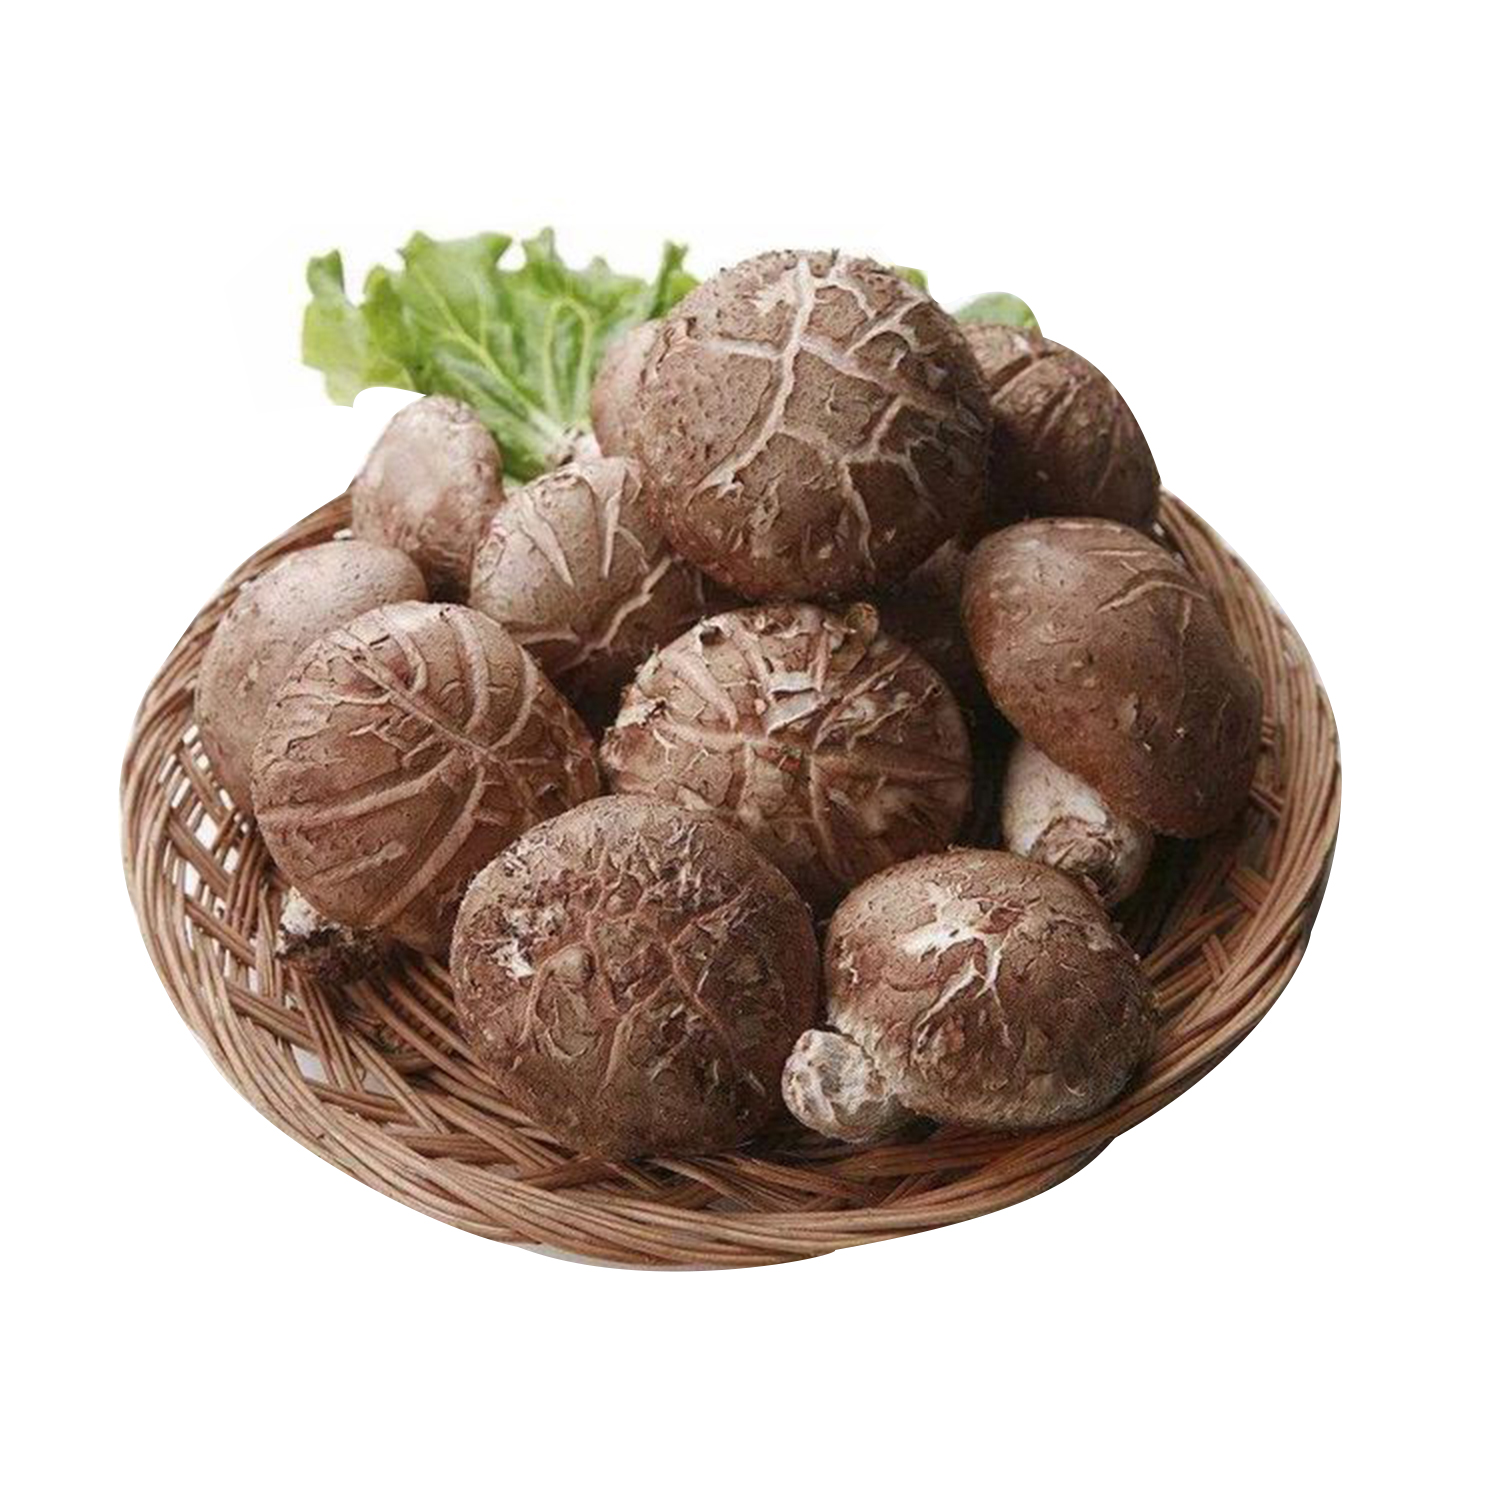 Fresh Shiitake Mushrooms 1 punnet 300g-eBest-Vegetables,Fruit & Vegetables